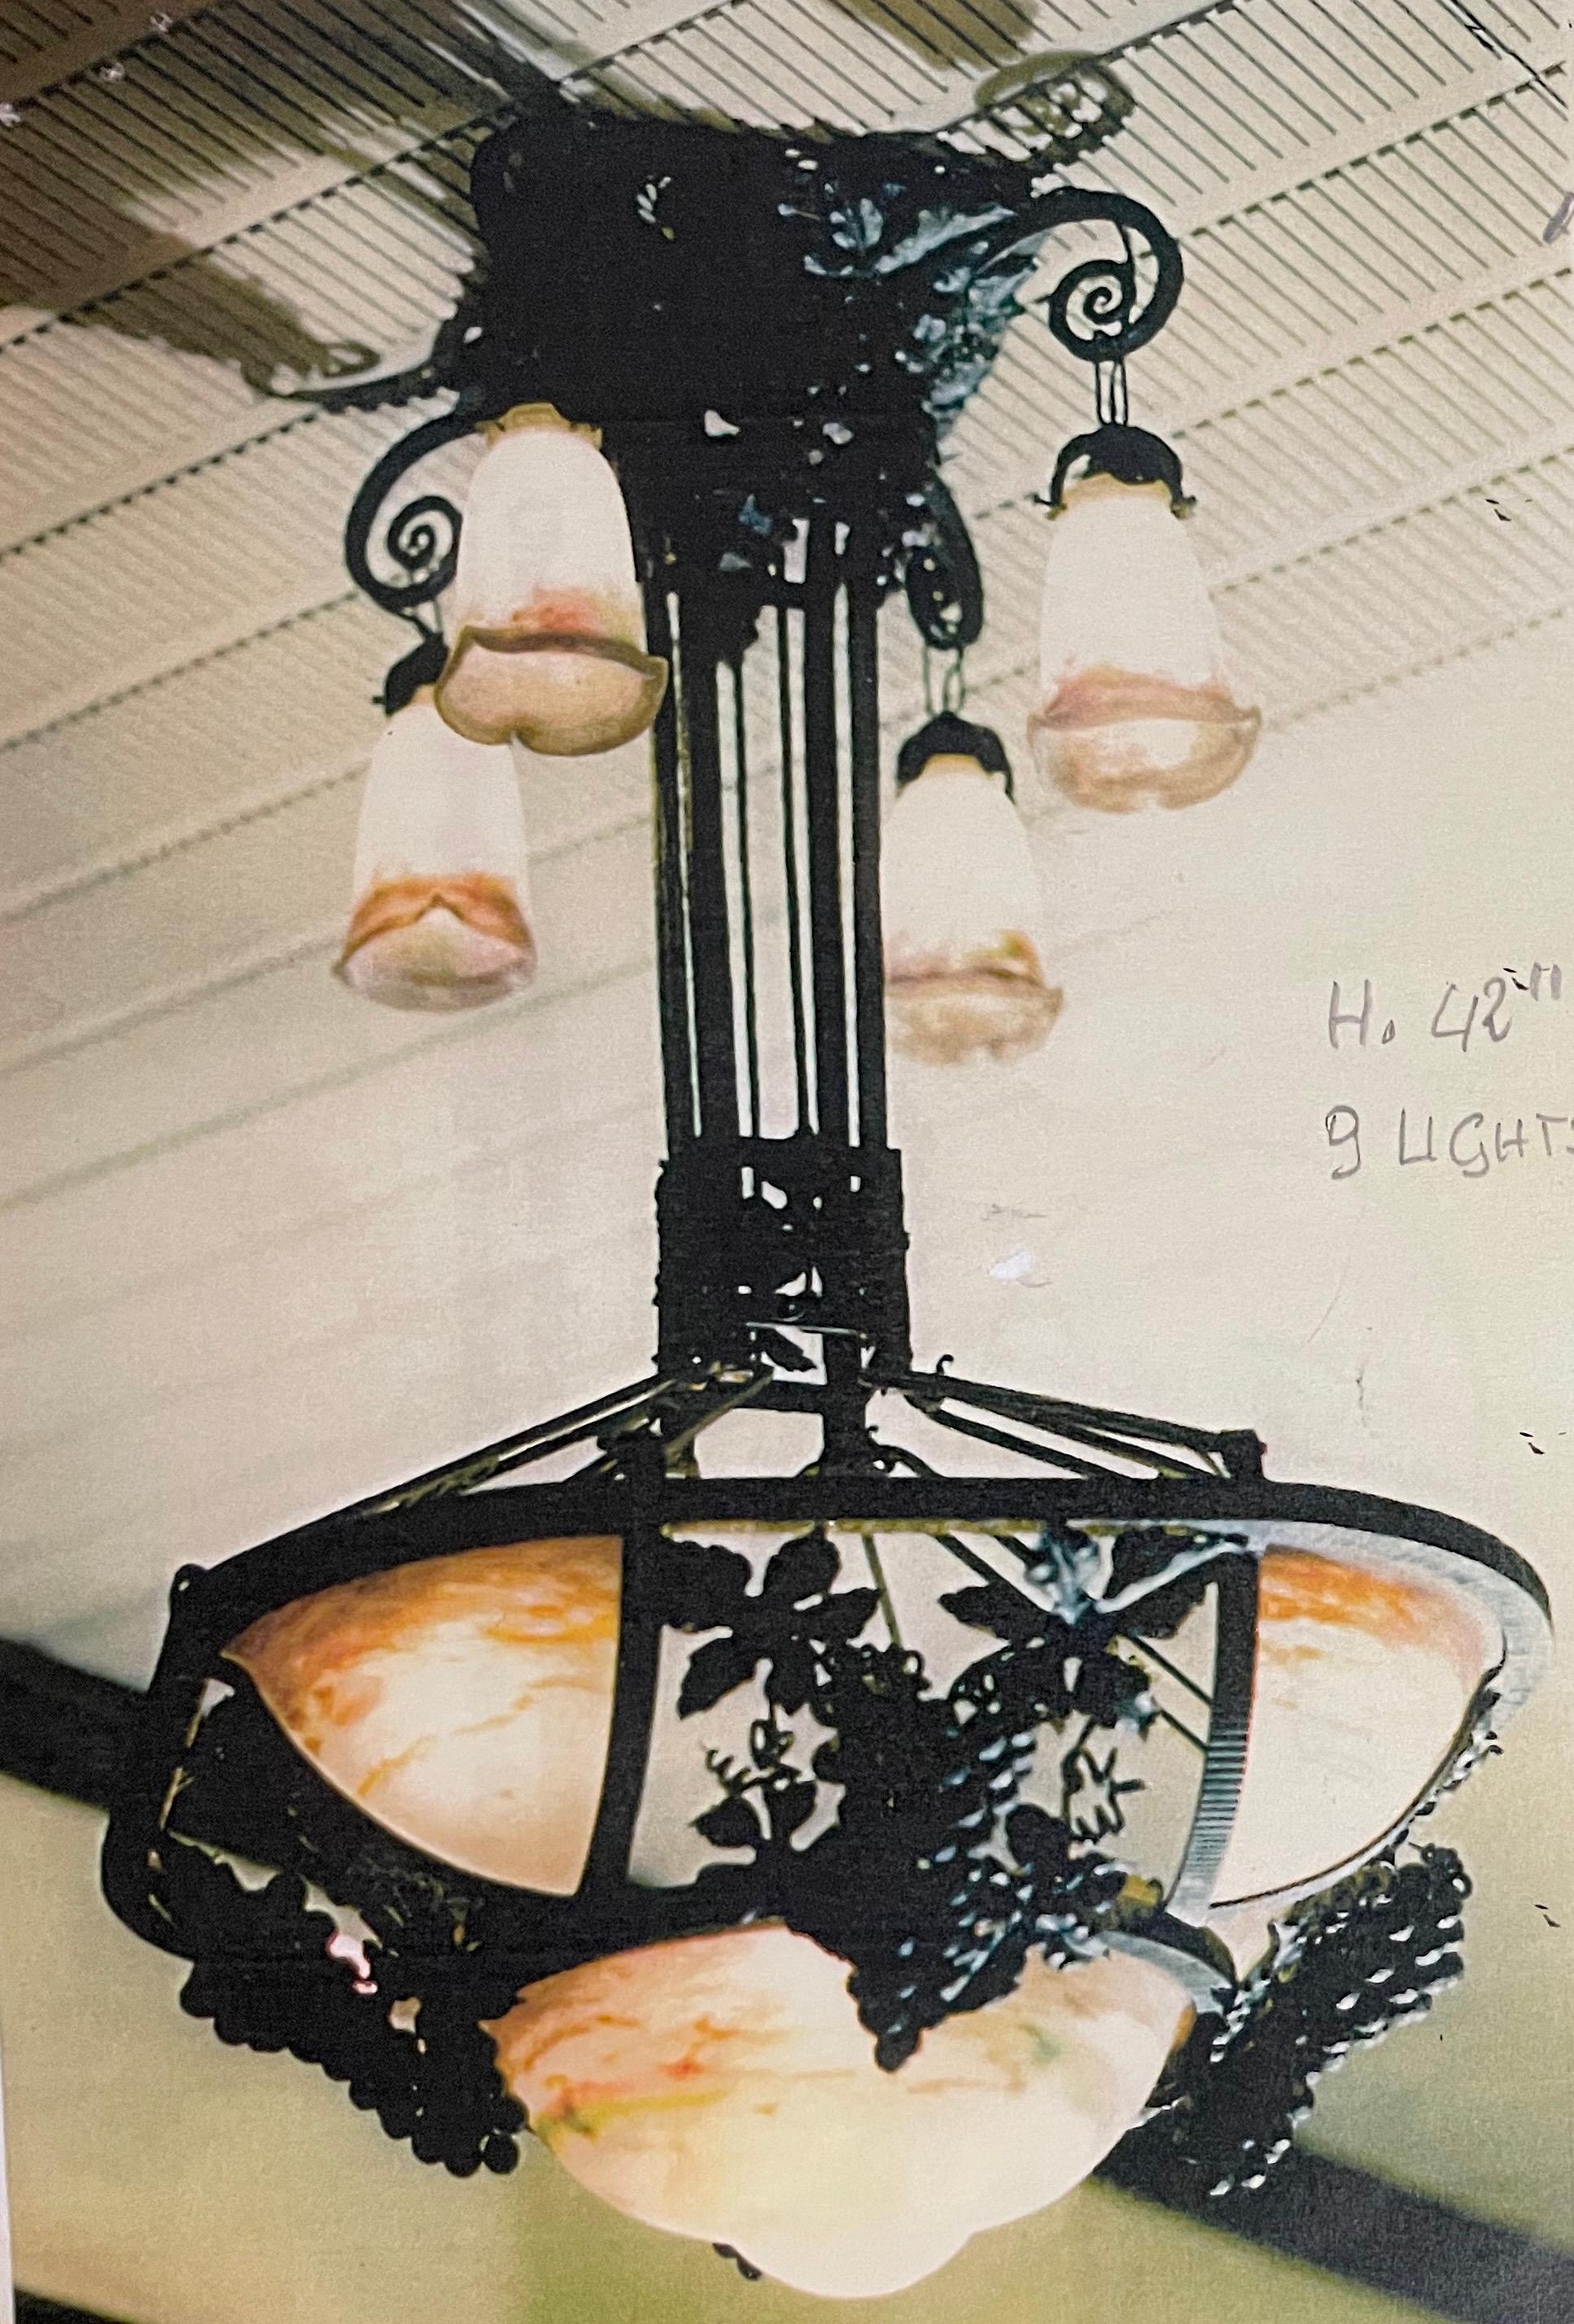 Lampe ancienne faite à la main avec des motifs botaniques par Muller Frères.

Muller Frères étaient des verriers renommés de Lunéville, en France, célèbres pour leur production de verreries Art nouveau.

Il s'agit d'une rare et magnifique lampe